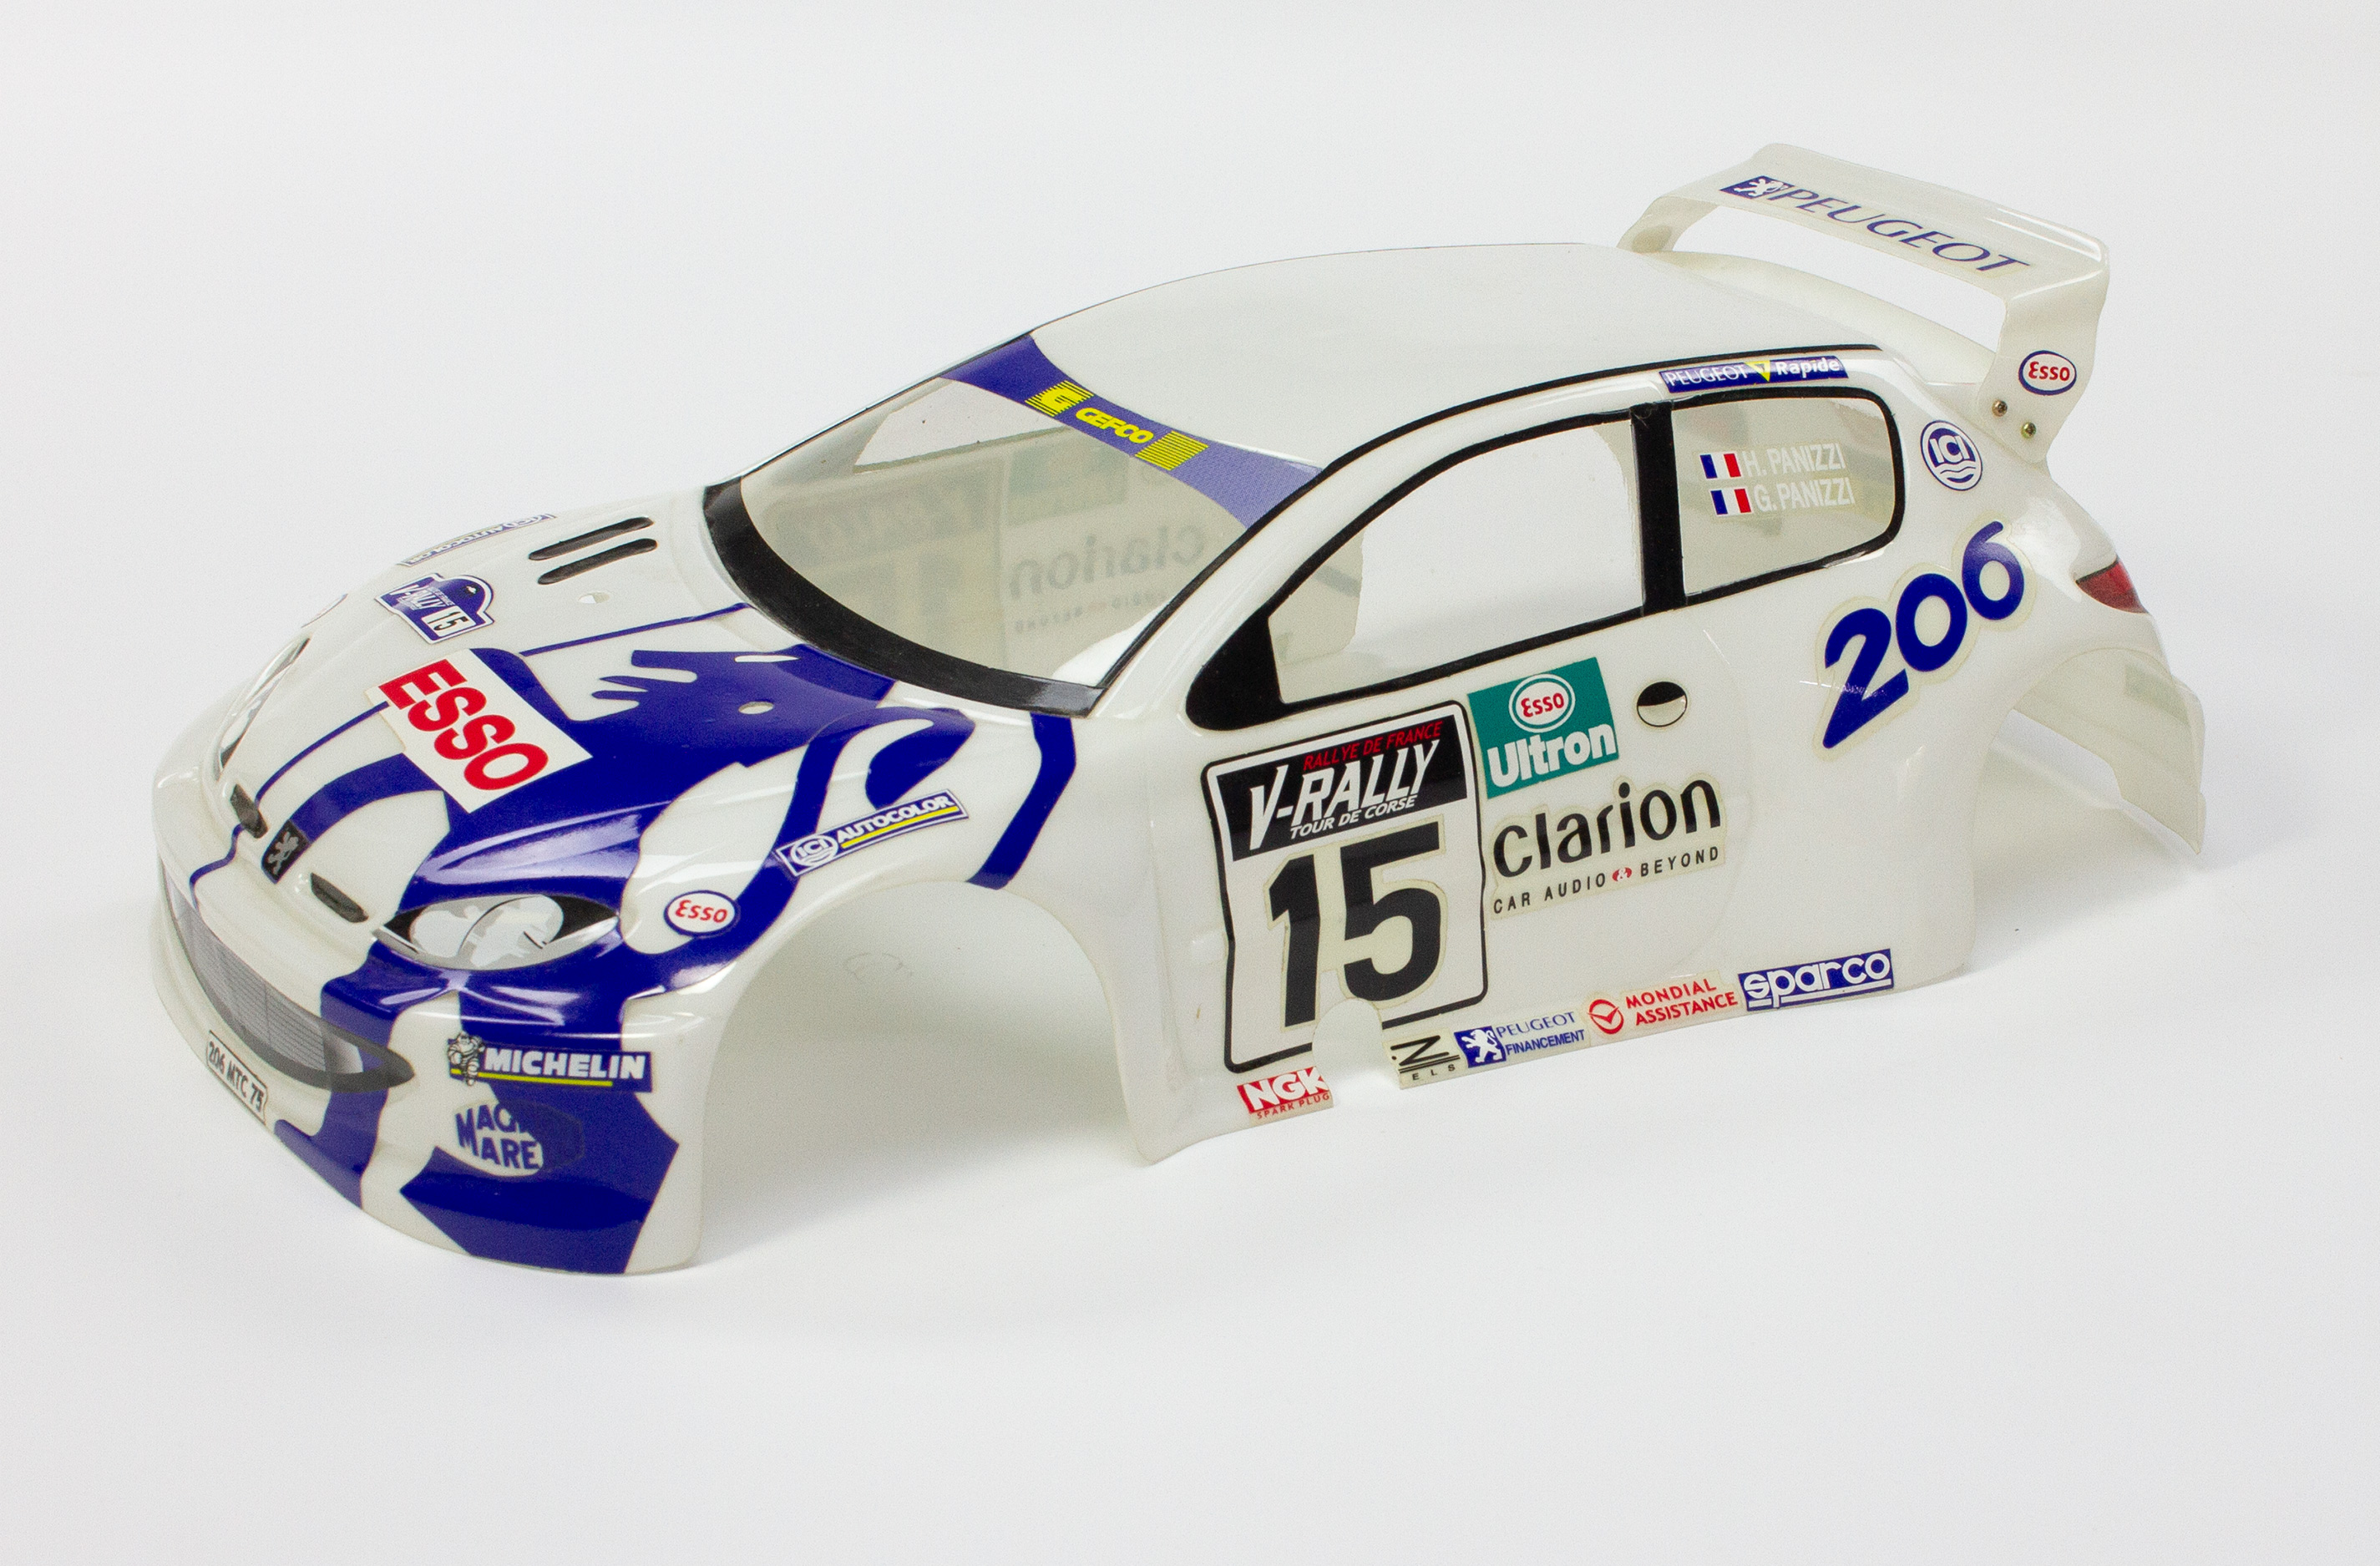 Peugeot 206 WRC 1999 1/10 scale body